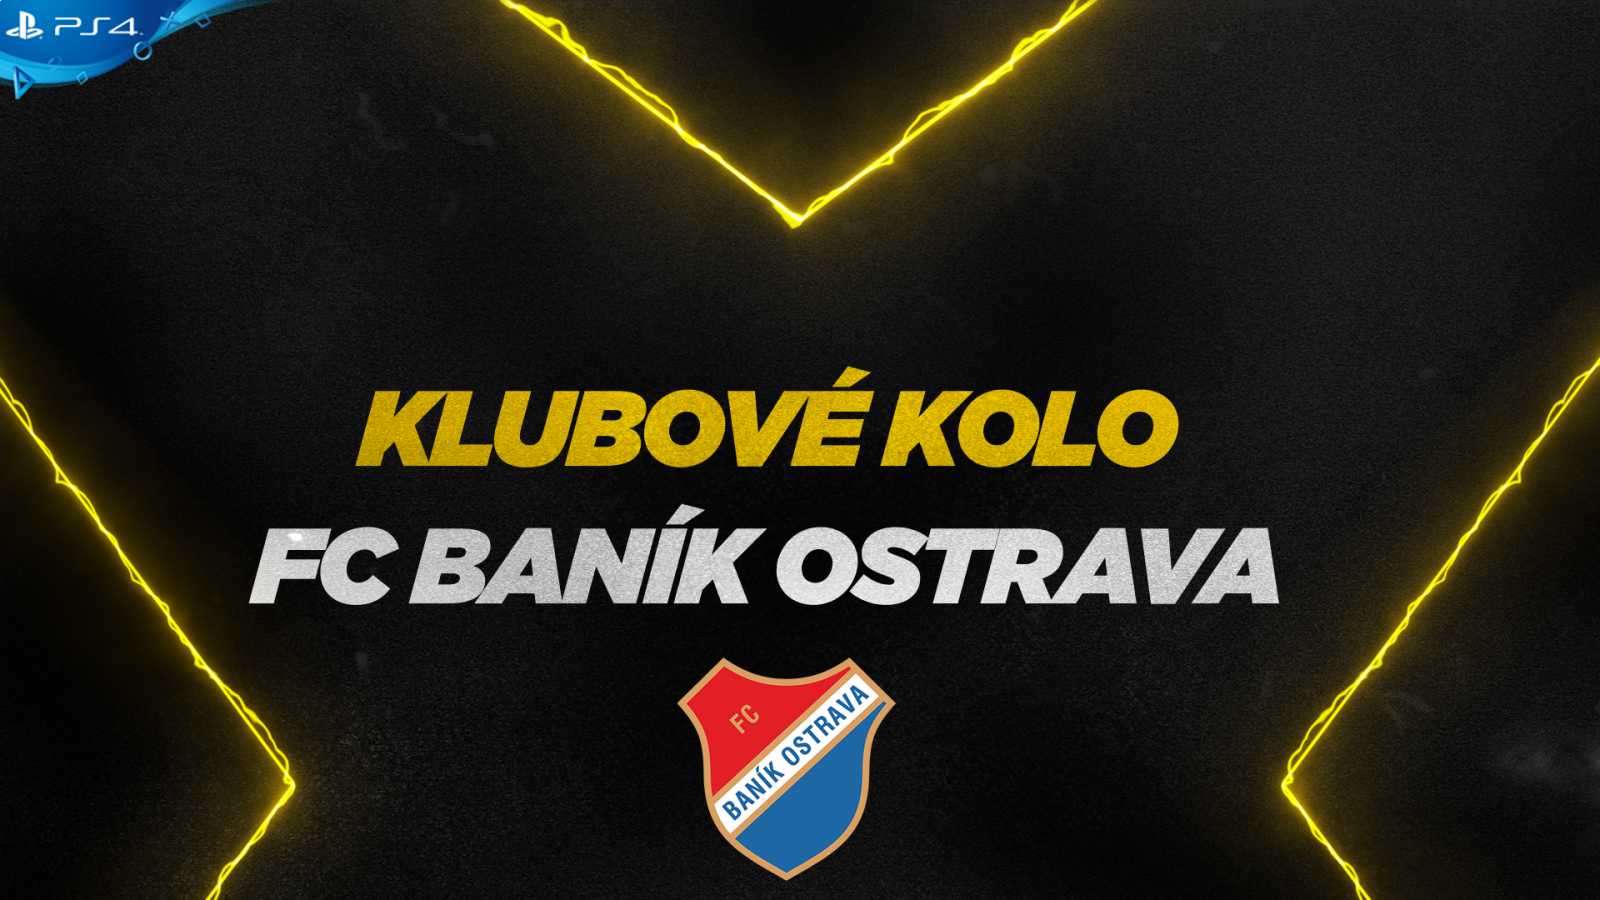 Známe jména reprezentantů týmu FK Baník Ostrava